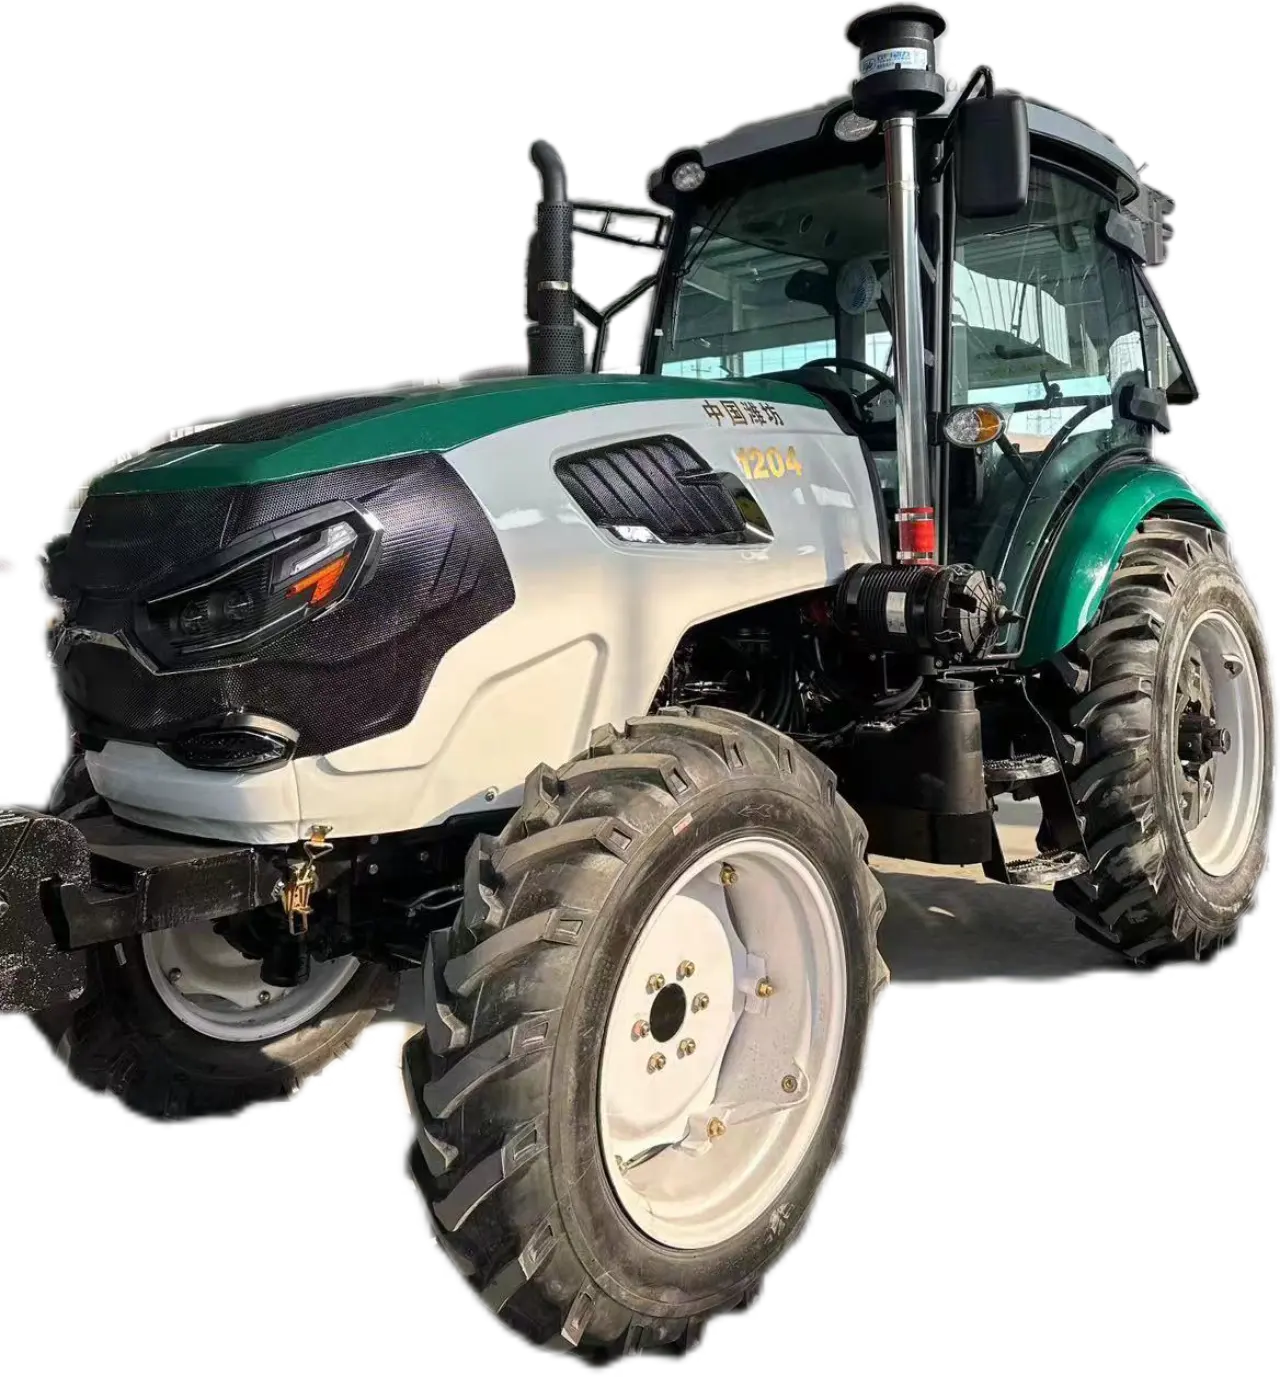 Qingdao Lezi Farming Machinery epa Certified Farm Tractorwheel Type 4x4 Tractor 4wdx954 Wheel Tractor